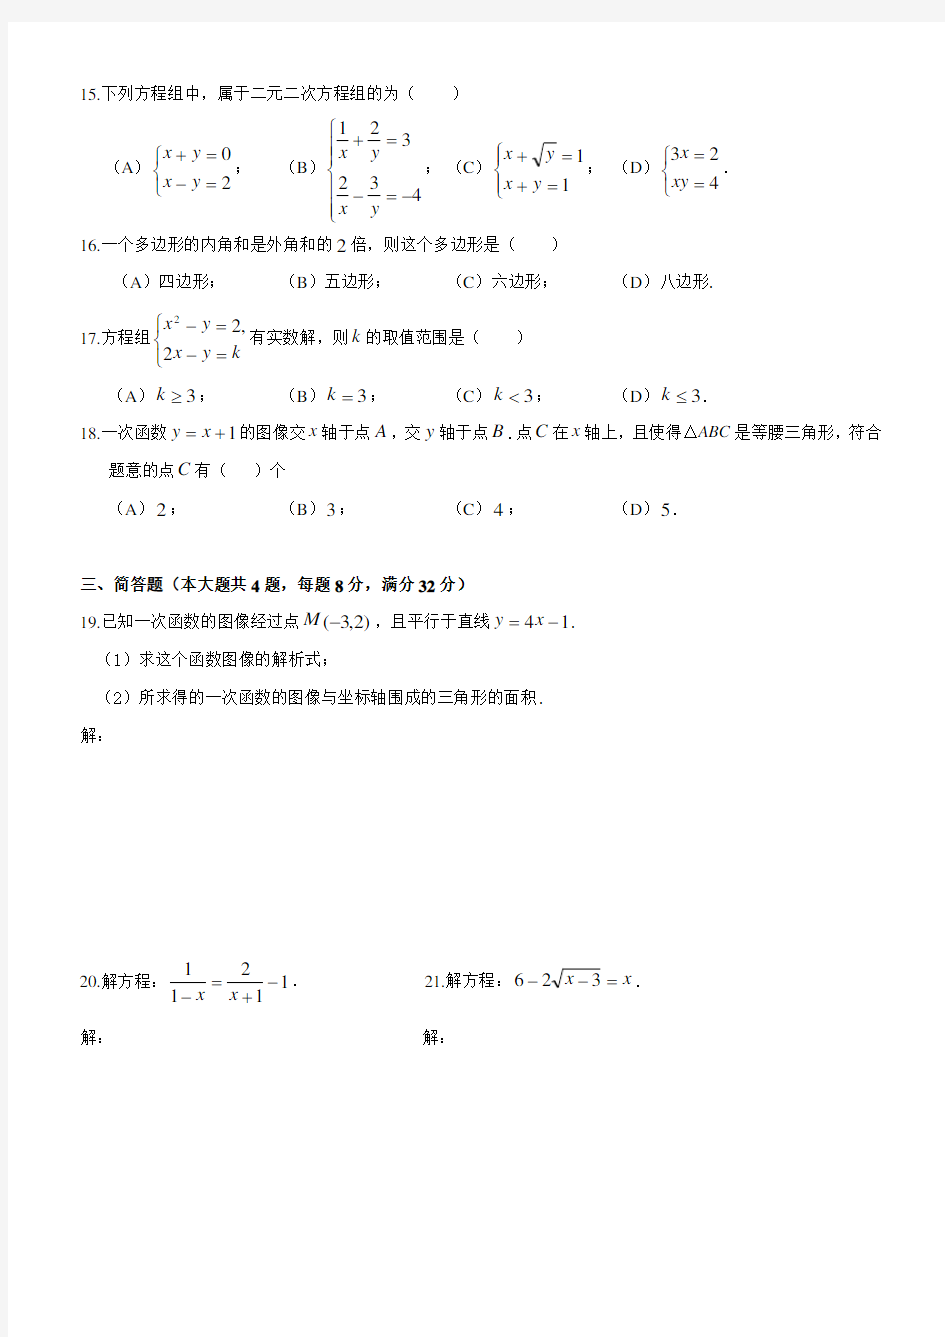 上海市2015学年第二学期八年级期中考试数学试卷